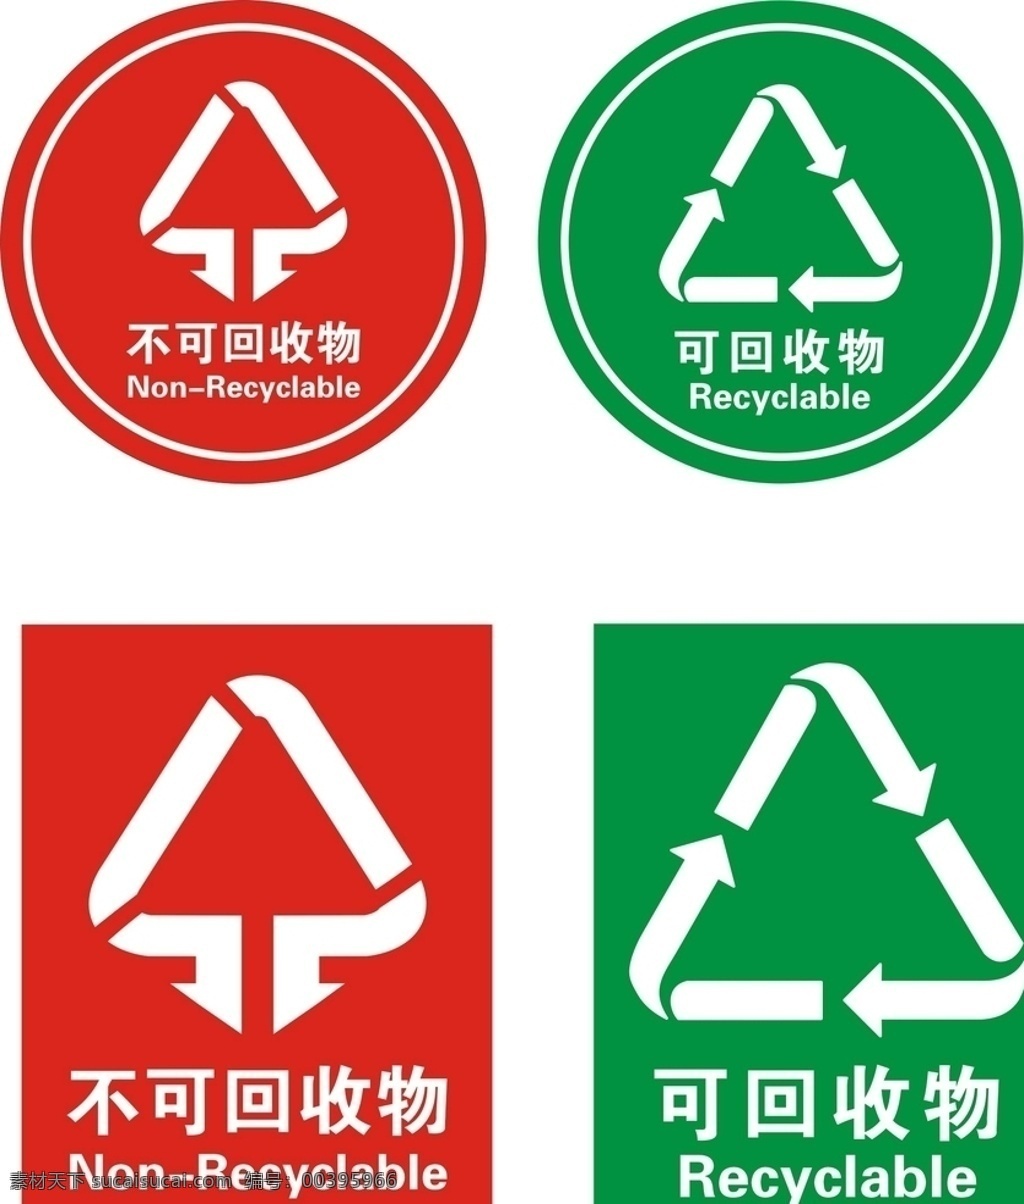 垃圾分类标志 垃圾分类标识 分类垃圾桶 垃圾桶标识 分类垃圾 垃圾 可回收垃圾 不可回收垃圾 标识类 标志图标 公共标识标志